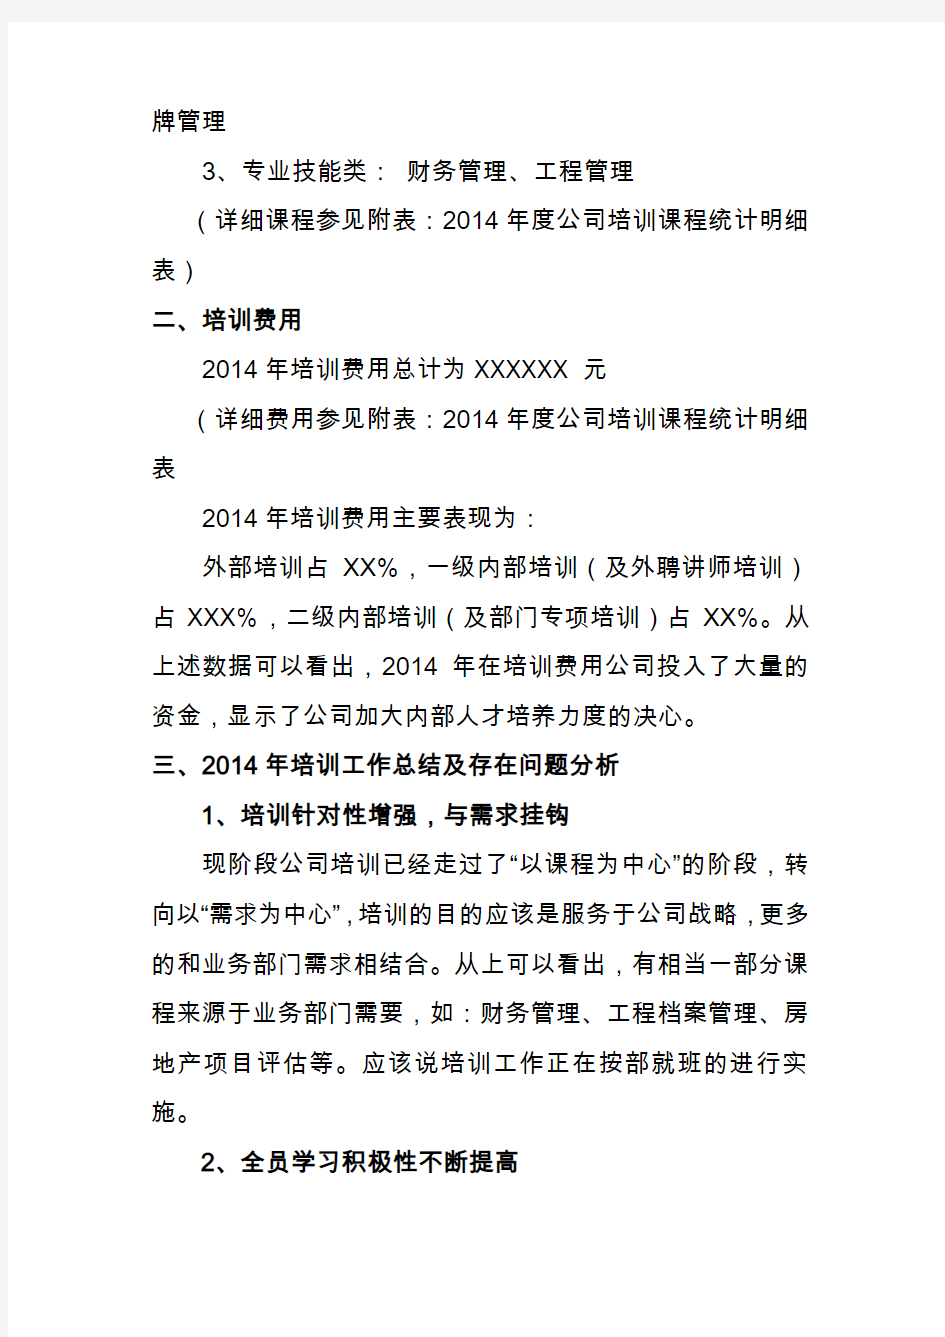 深圳XX公司2014年度培训工作总结及2015年工作计划